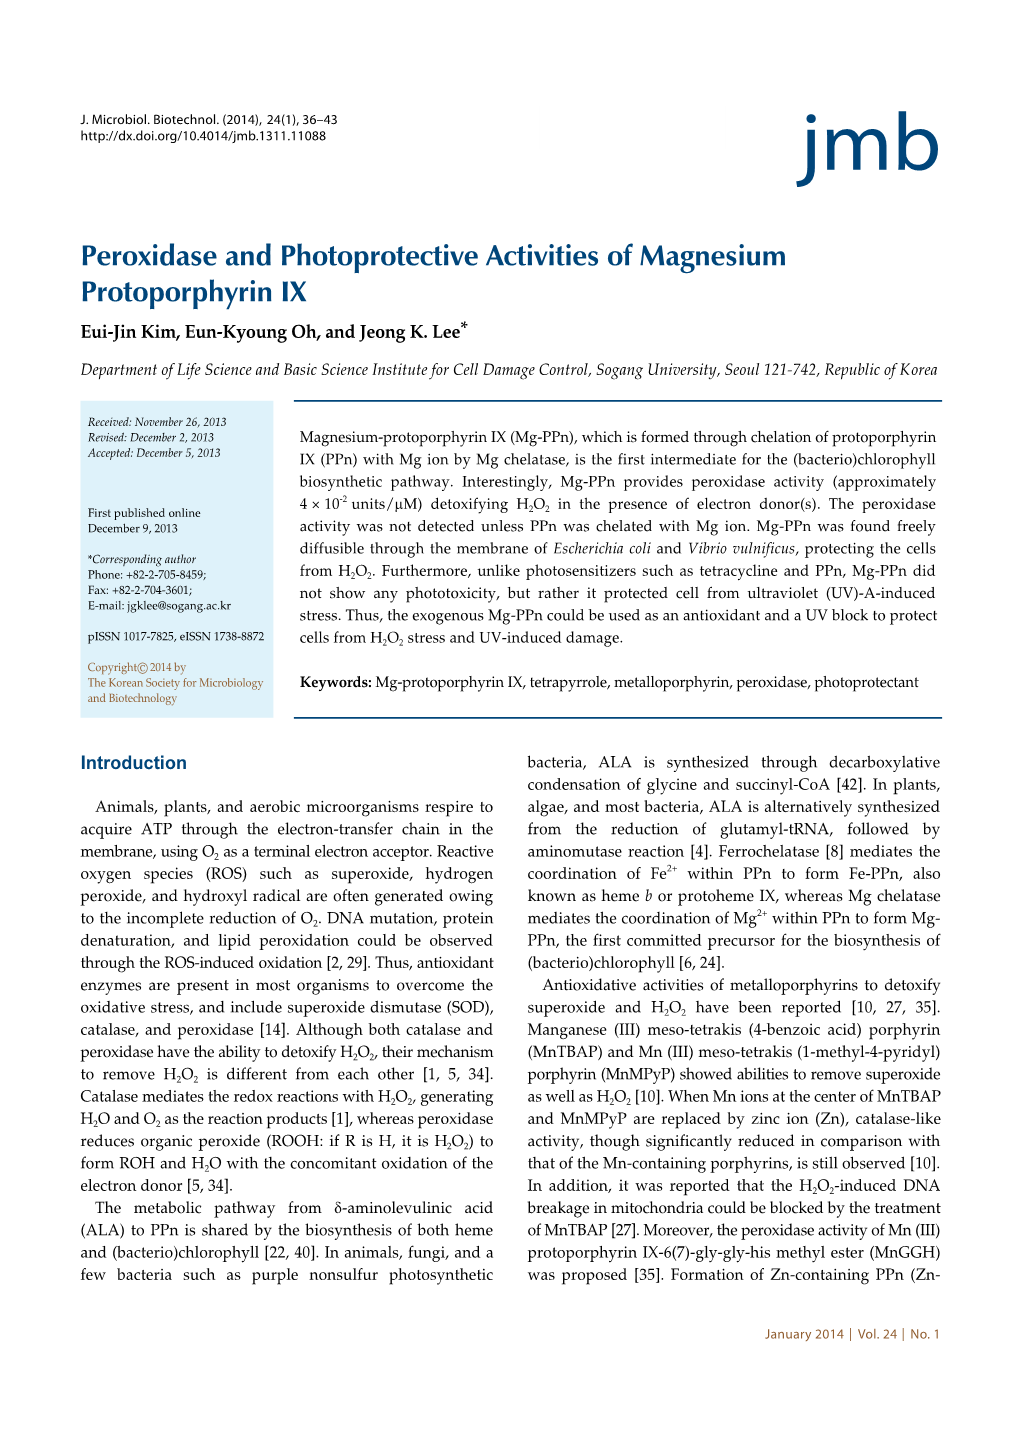 Peroxidase and Photoprotective Activities of Magnesium Protoporphyrin IX Eui-Jin Kim, Eun-Kyoung Oh, and Jeong K